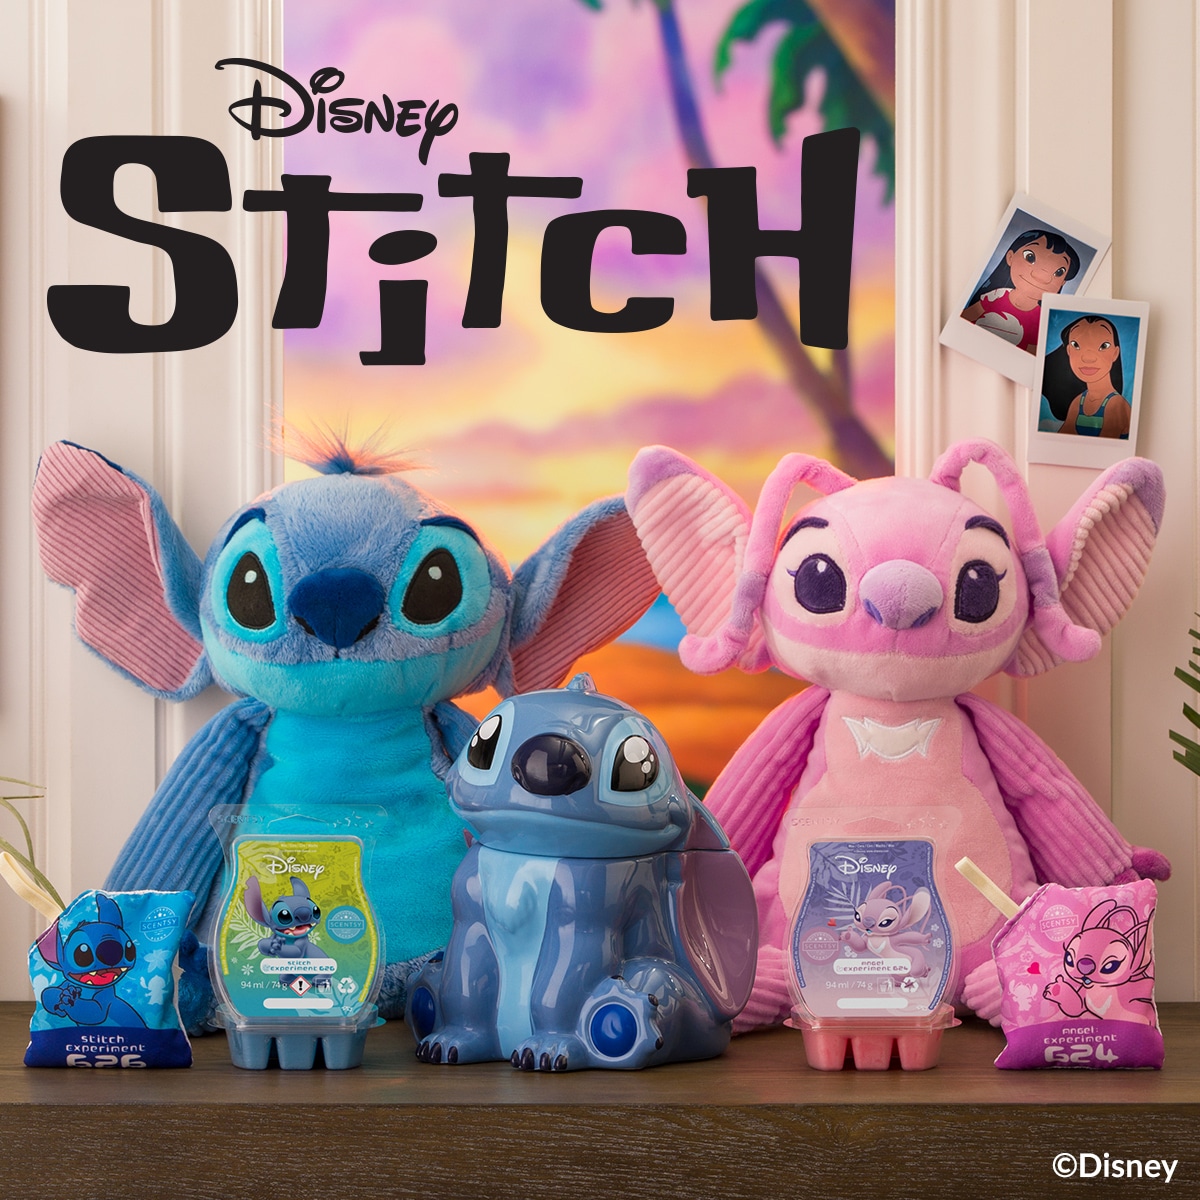 Disney Stitch – Scentsy Warmer and Lilo & Stitch fragrances